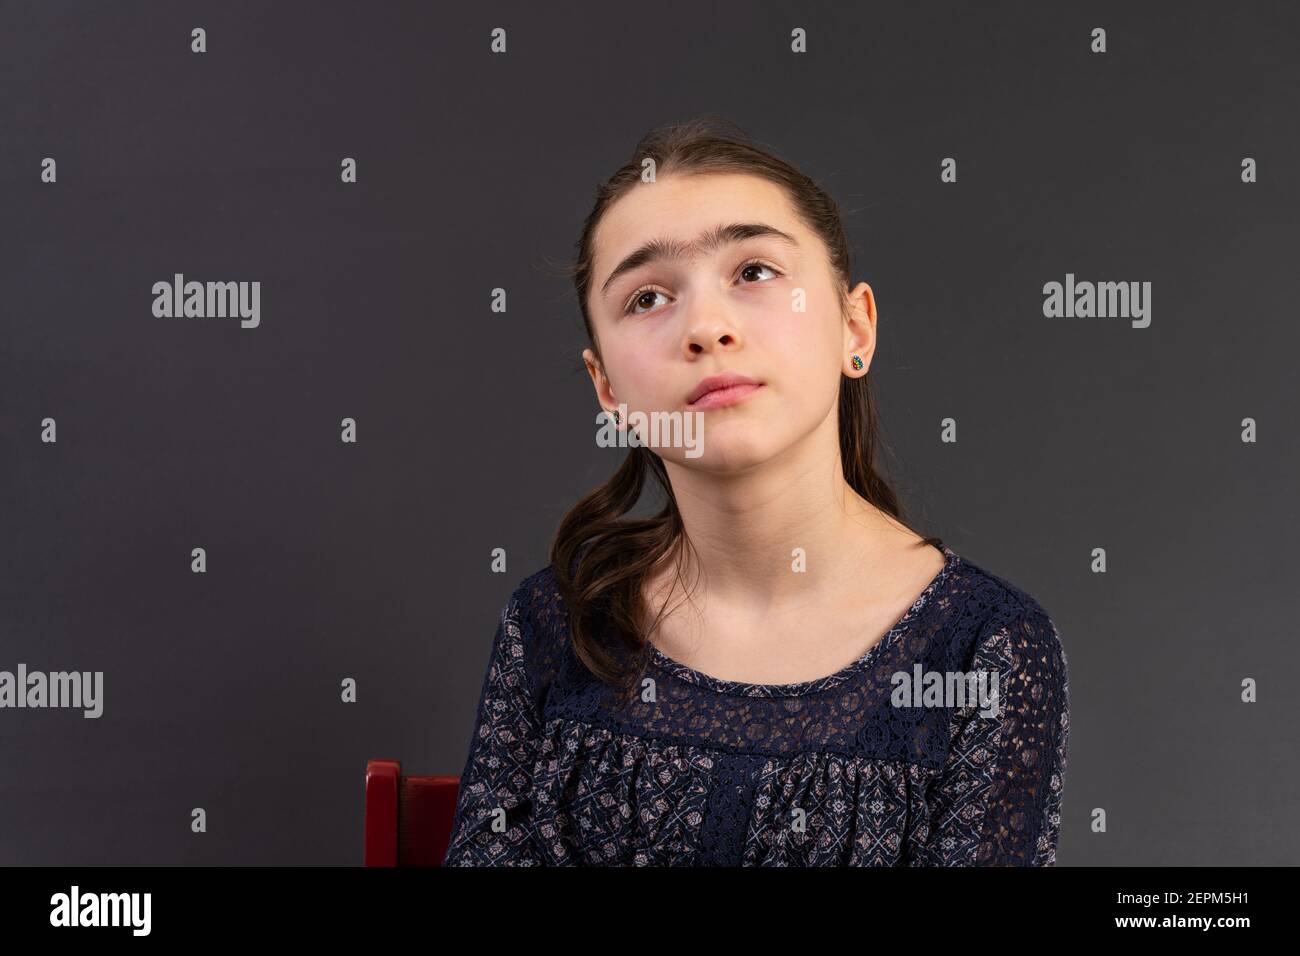 Portrait von jungen Mädchen suchen isoliert vor einem Kreidetafel Hintergrund. Stimmung Gefühle Persönlichkeit und Gesichtsausdruck Konzept. Stockfoto